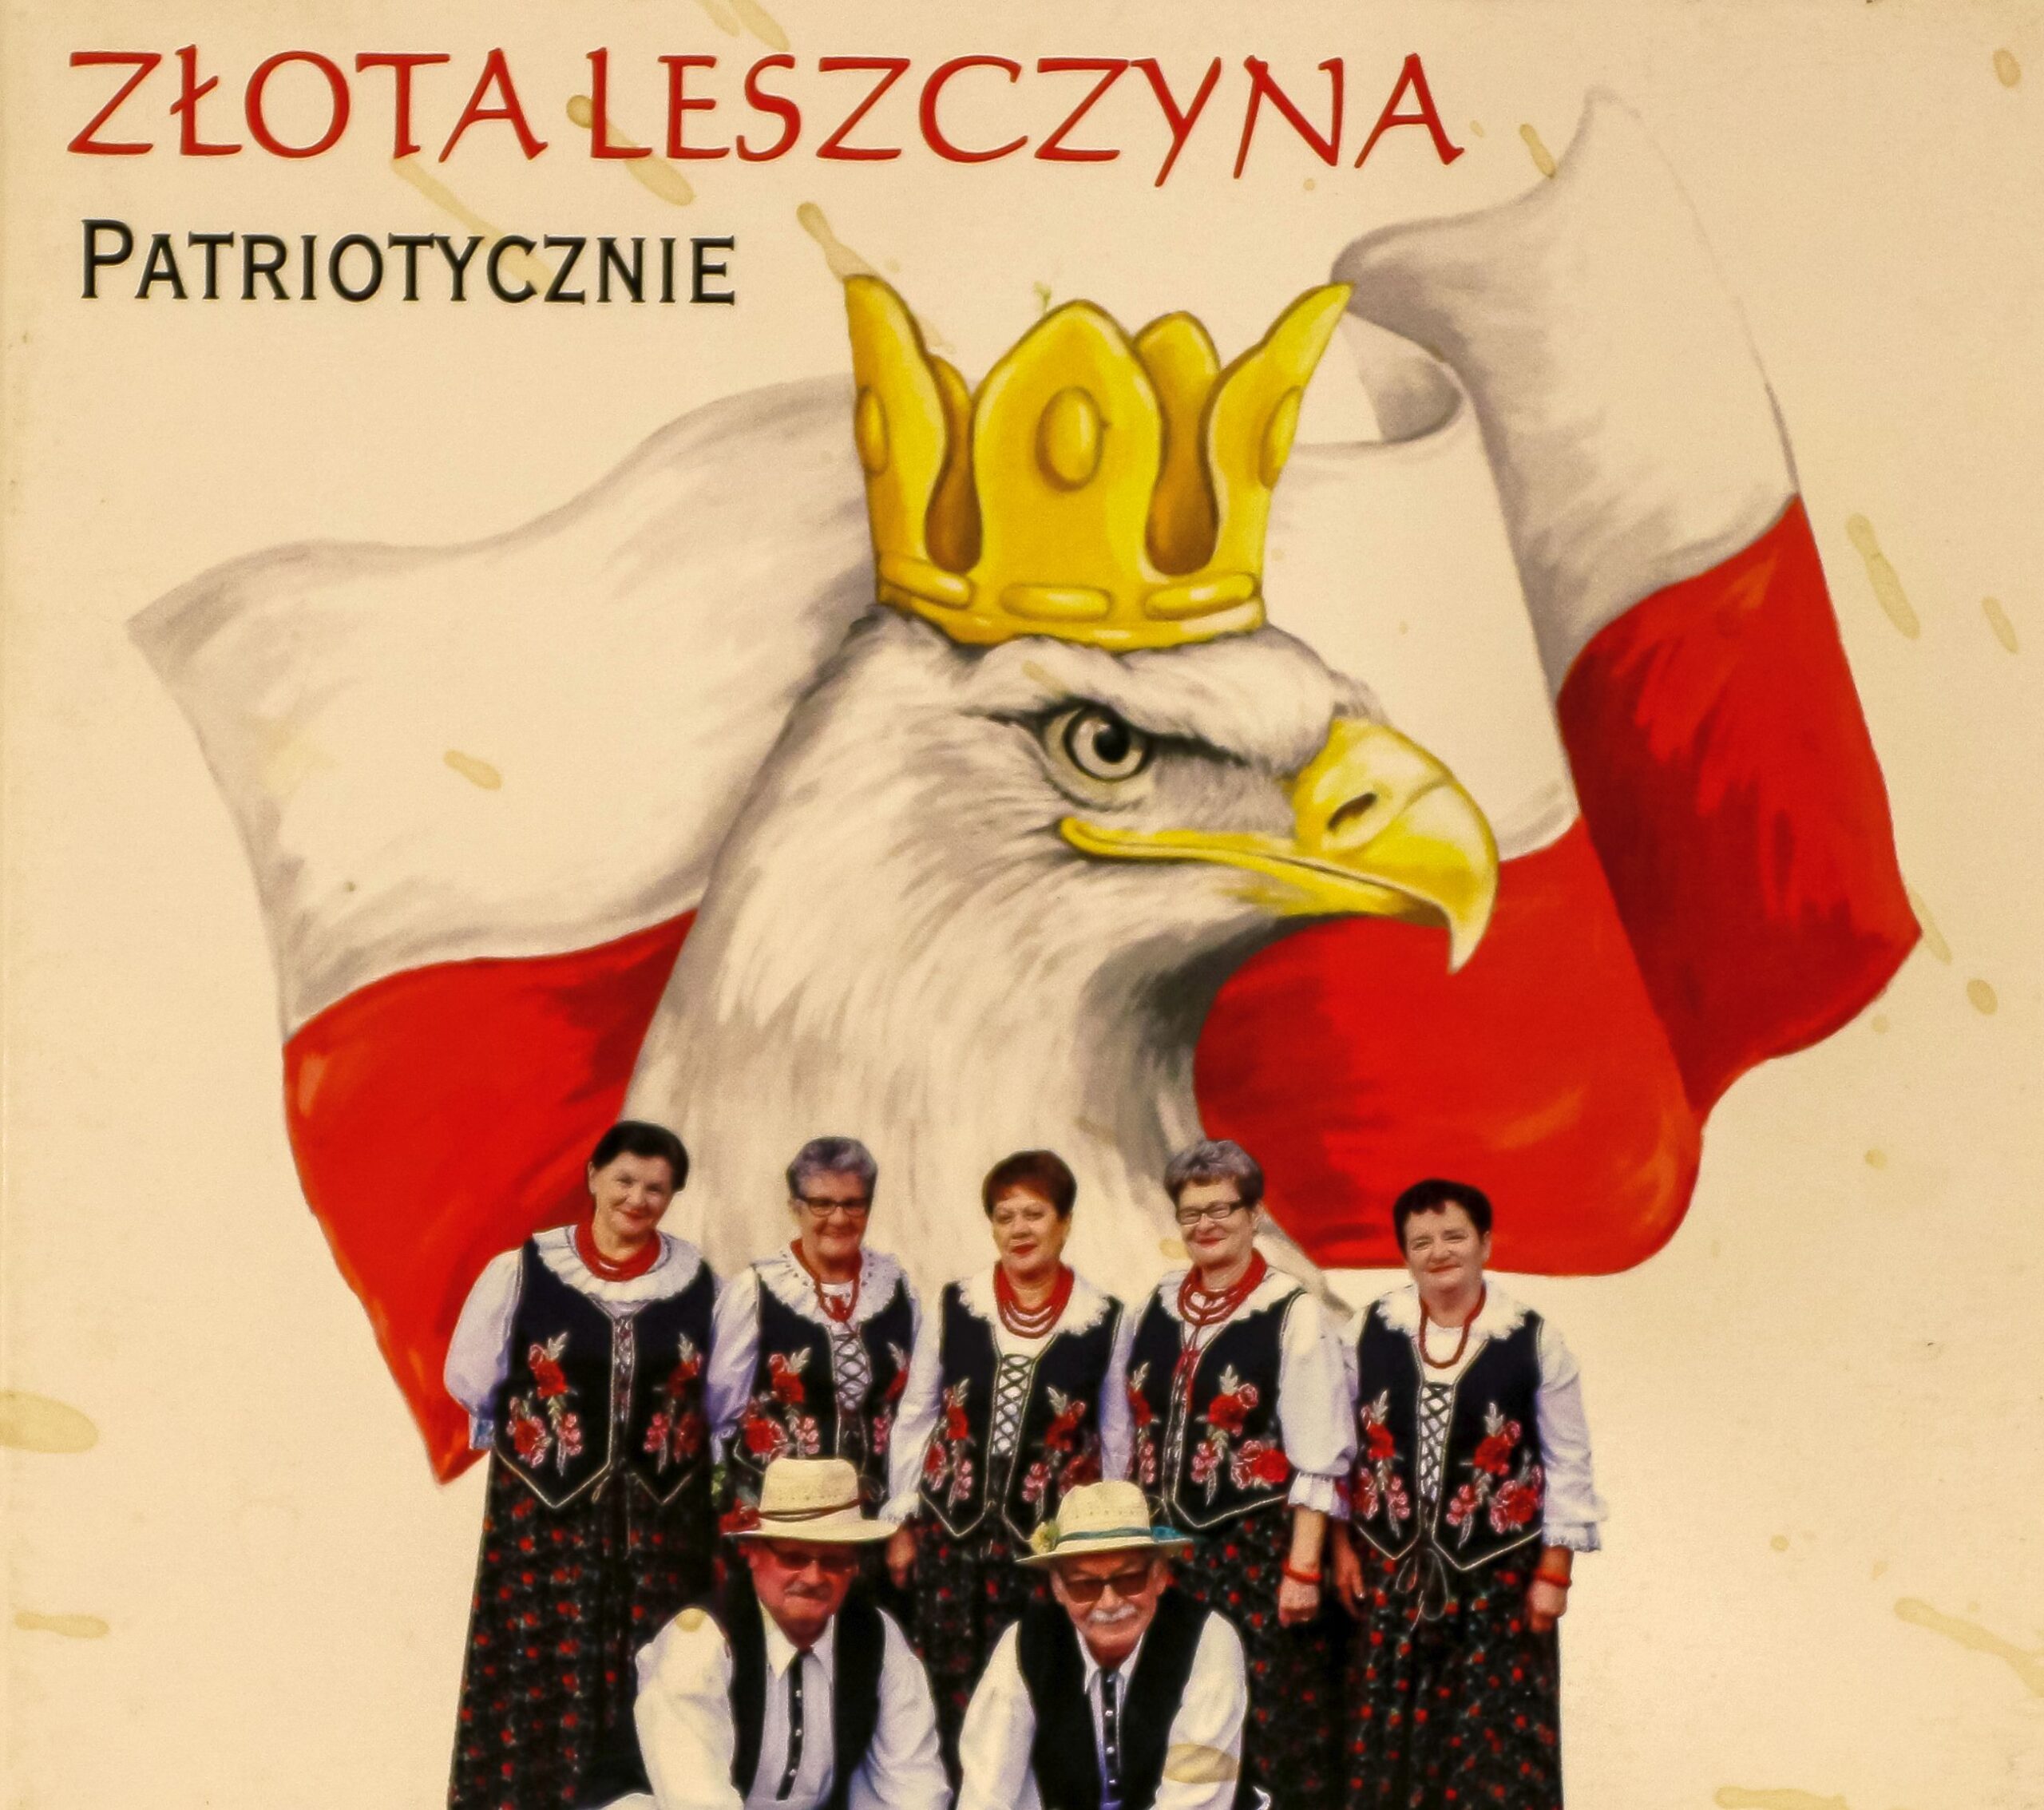 Zlota Leszczyna - patriotycznie